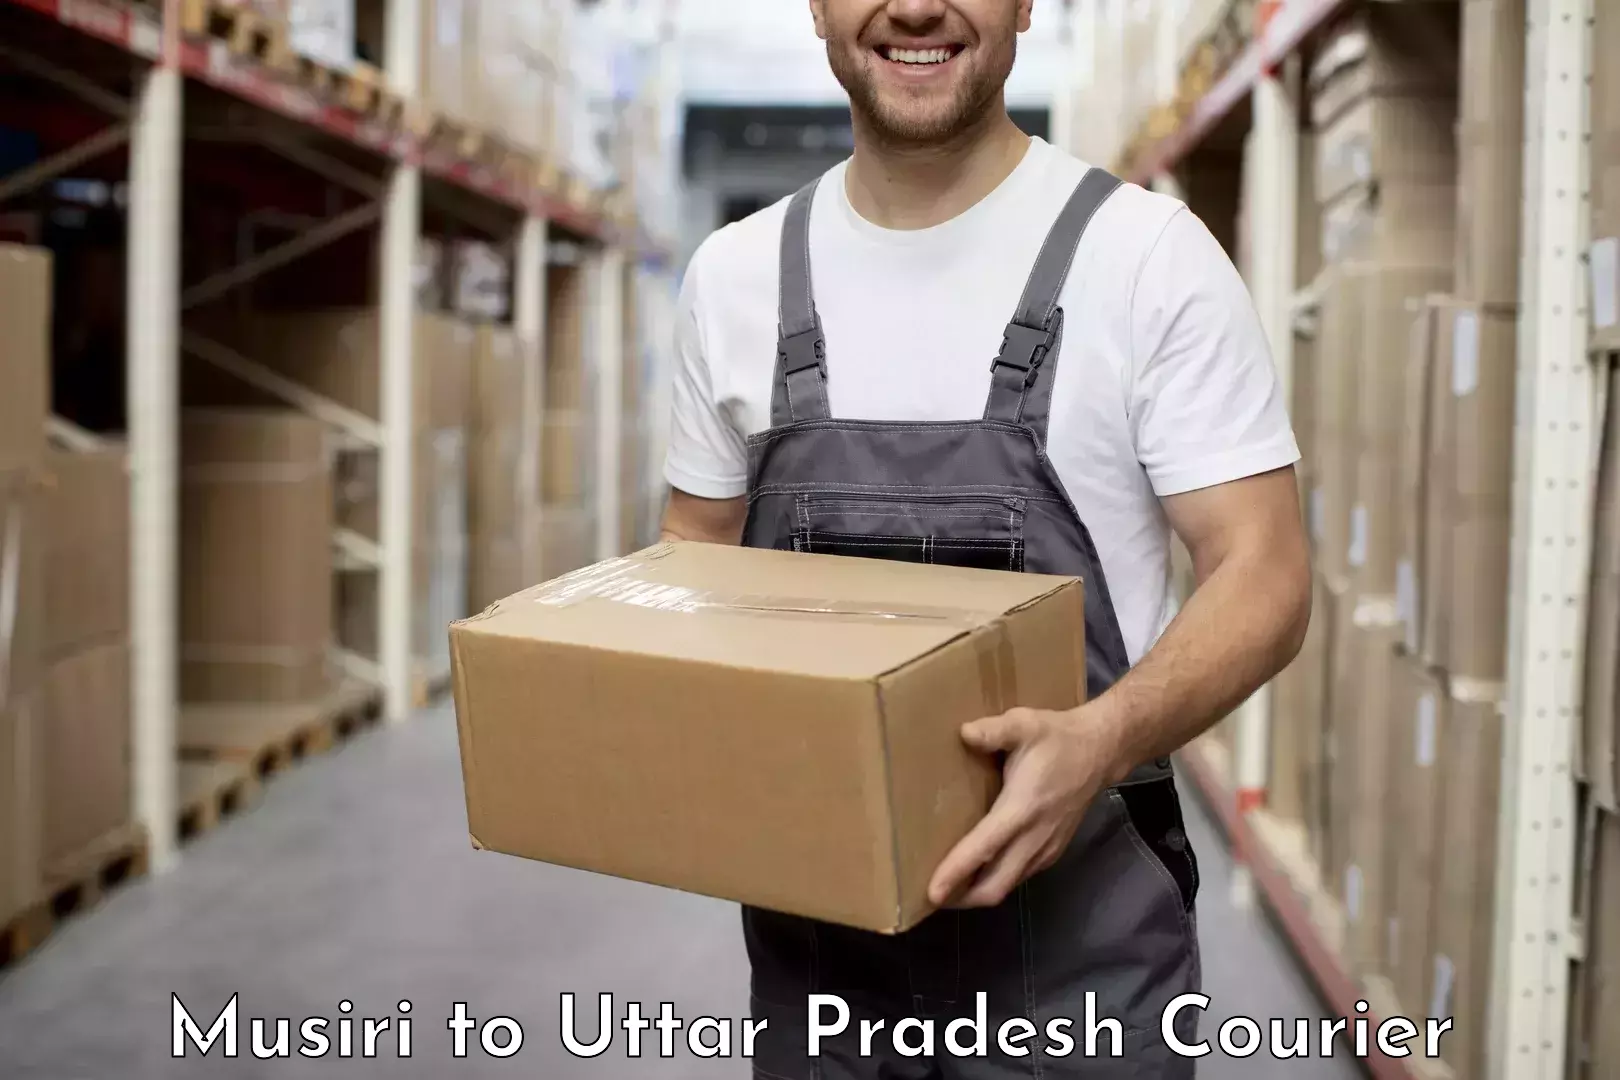 Professional courier handling Musiri to Aligarh Muslim University